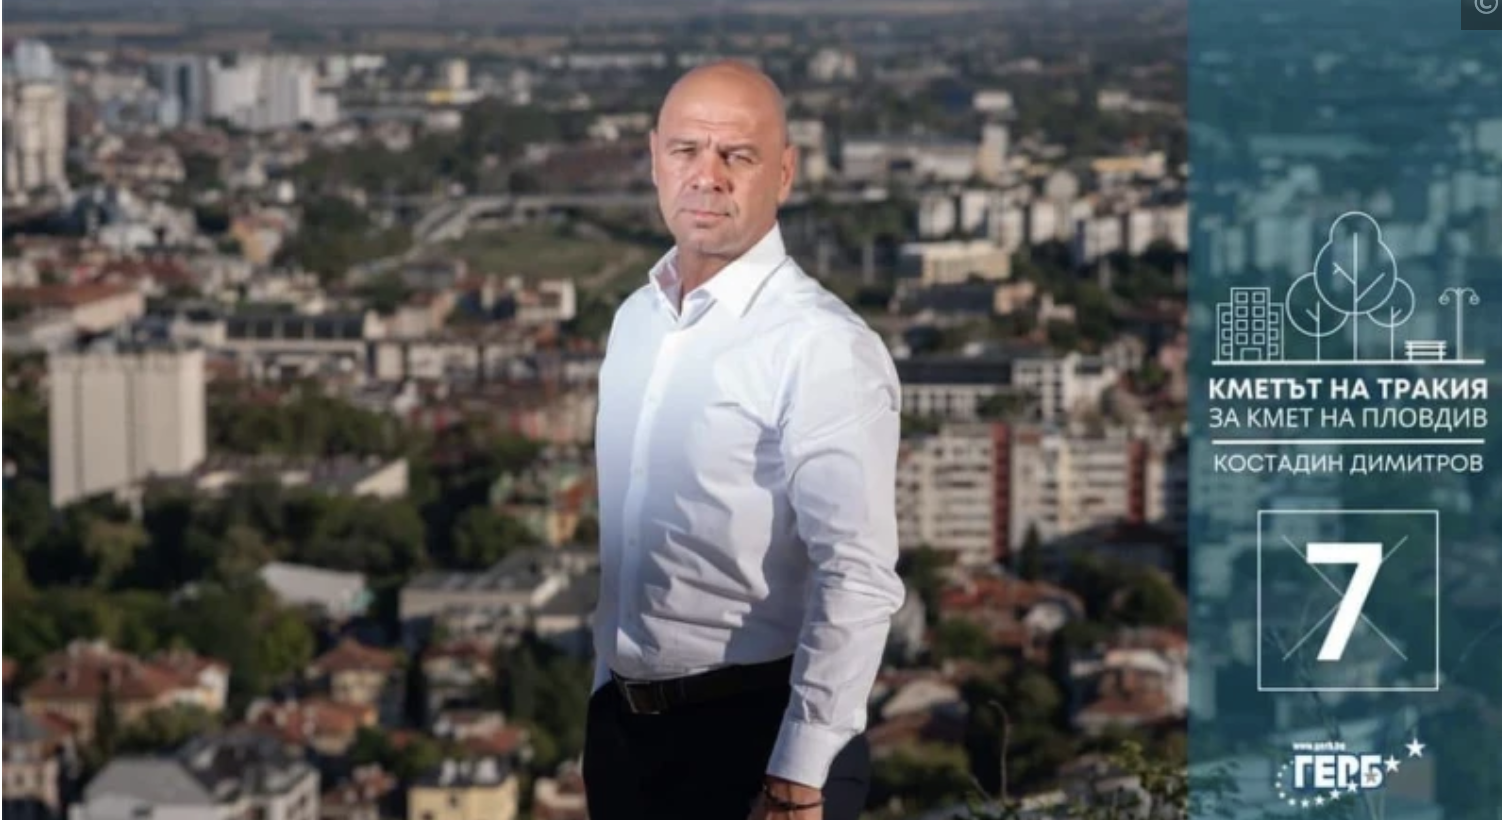 Слави Георгиев, общински съветник от листата на ГЕРБ публикува позиция